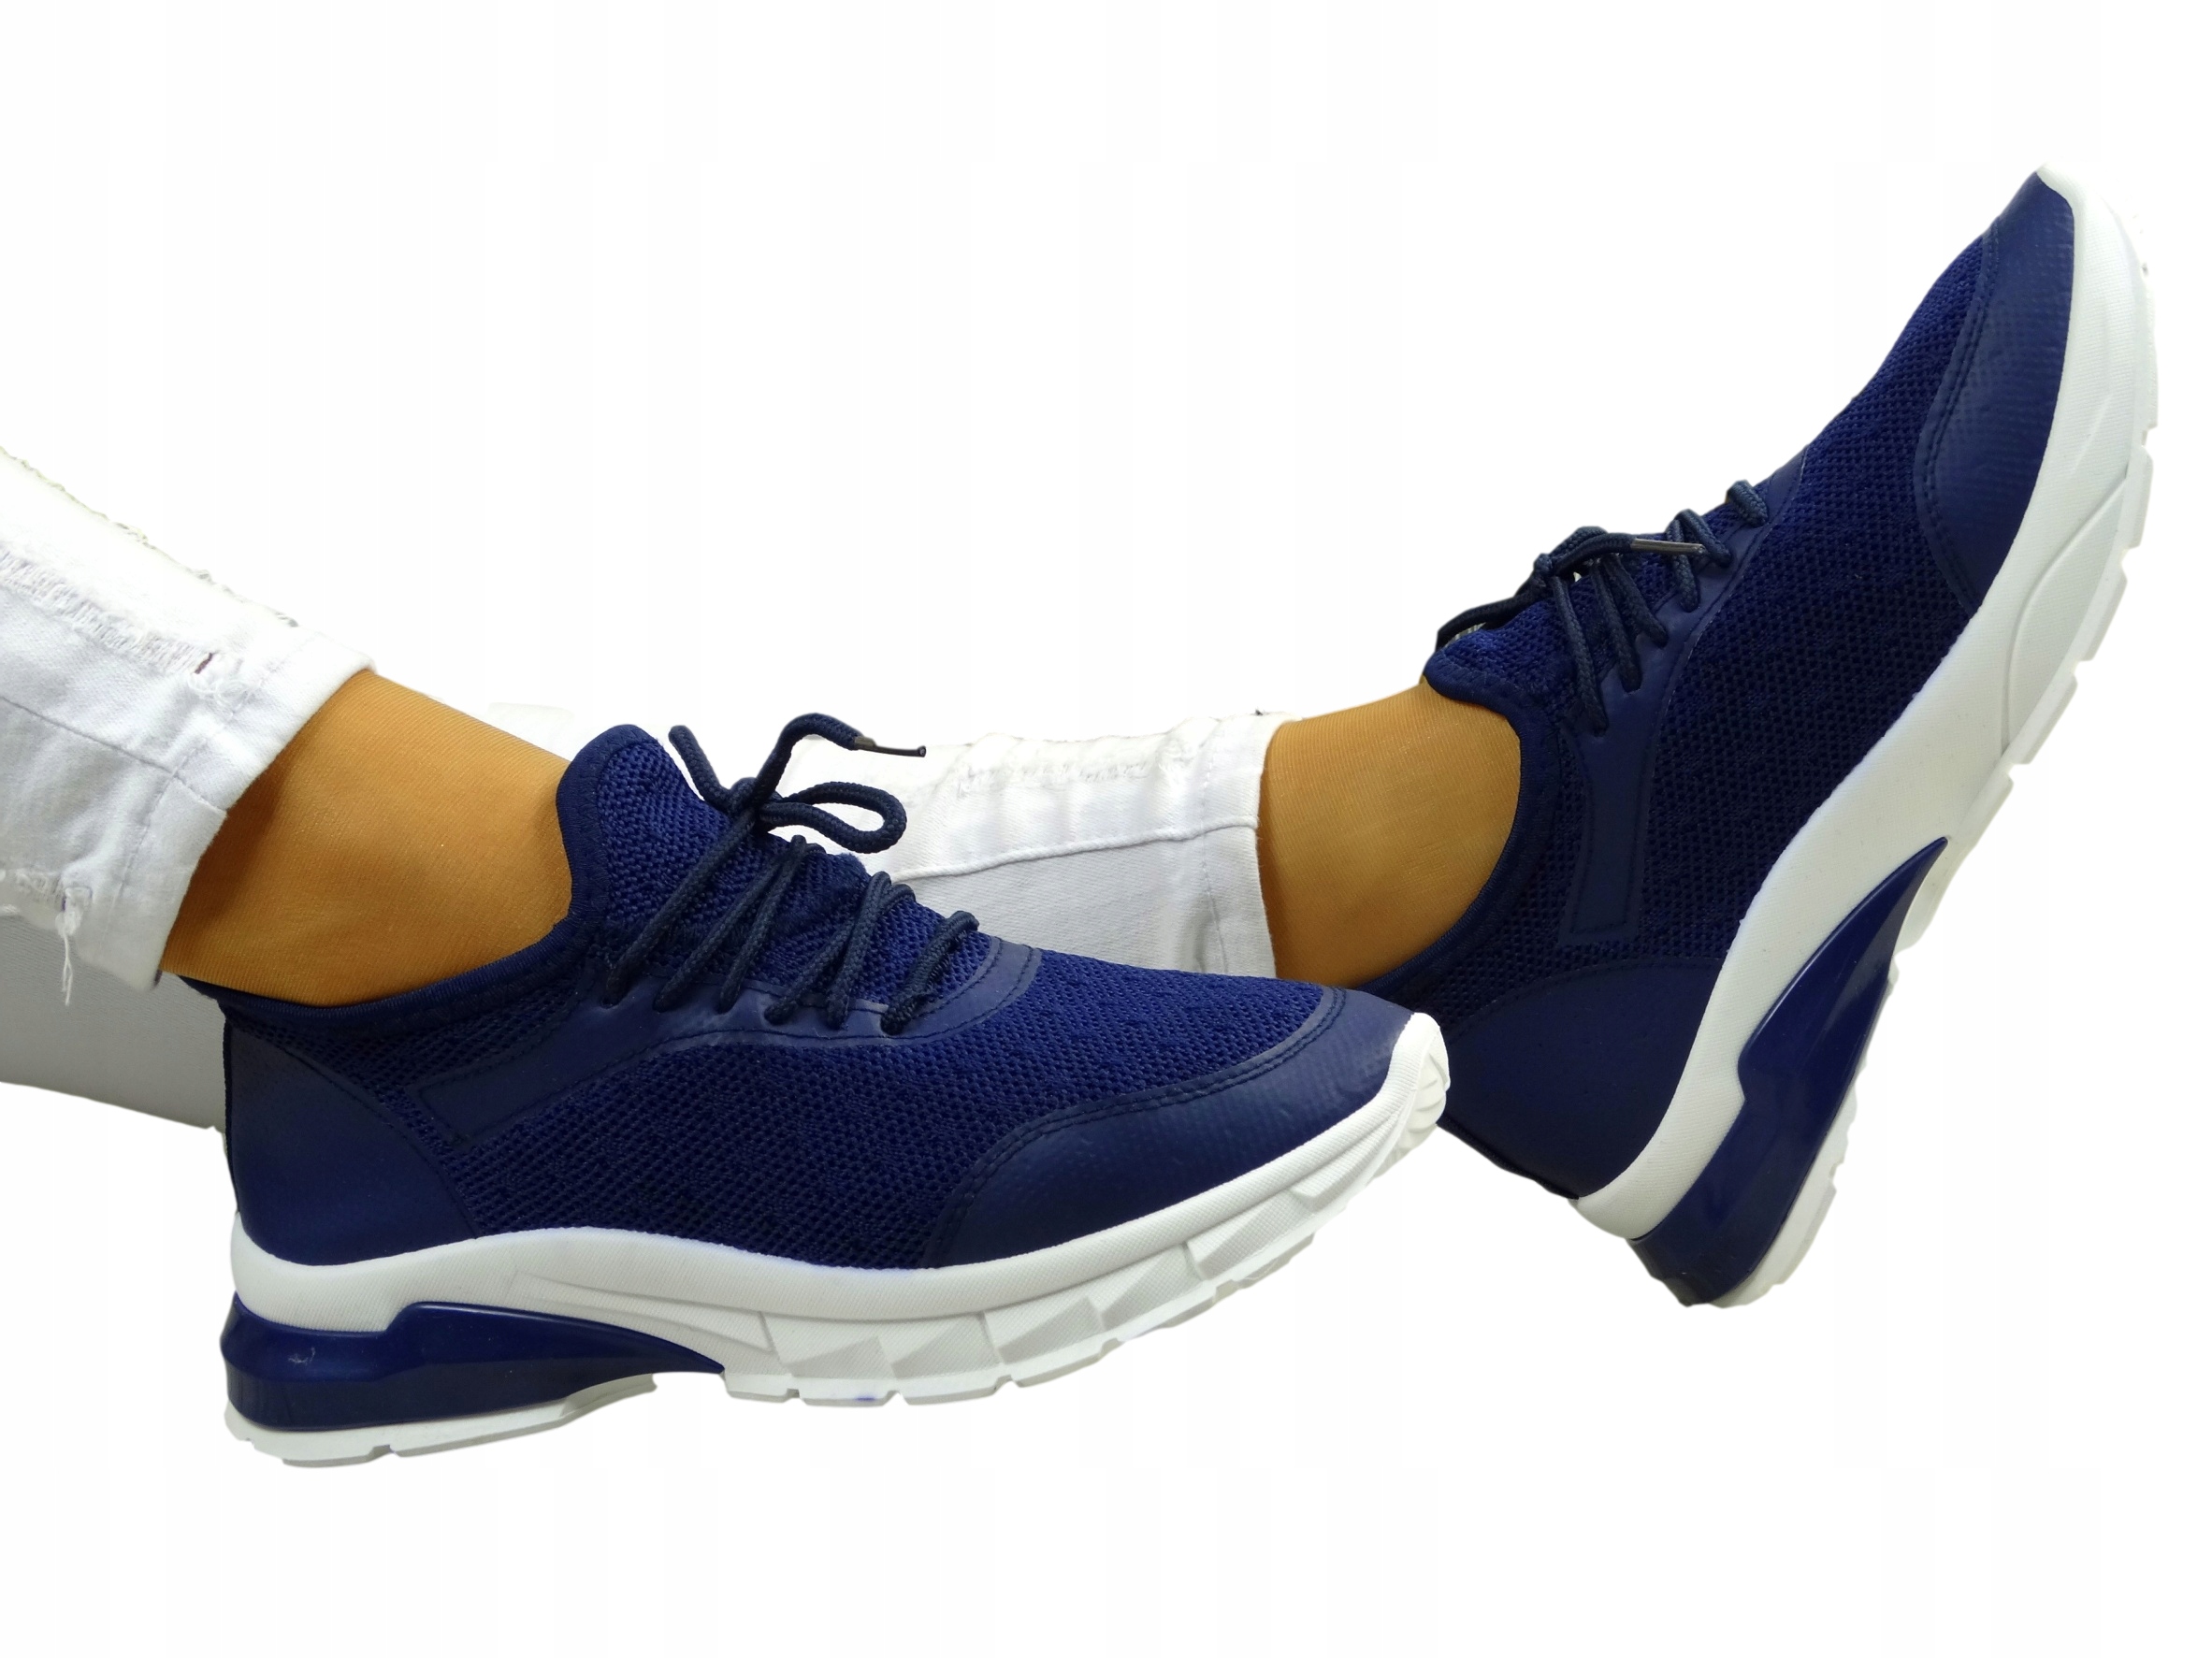 Adidases Спортивная обувь Толстая подошва Максимальный стиль